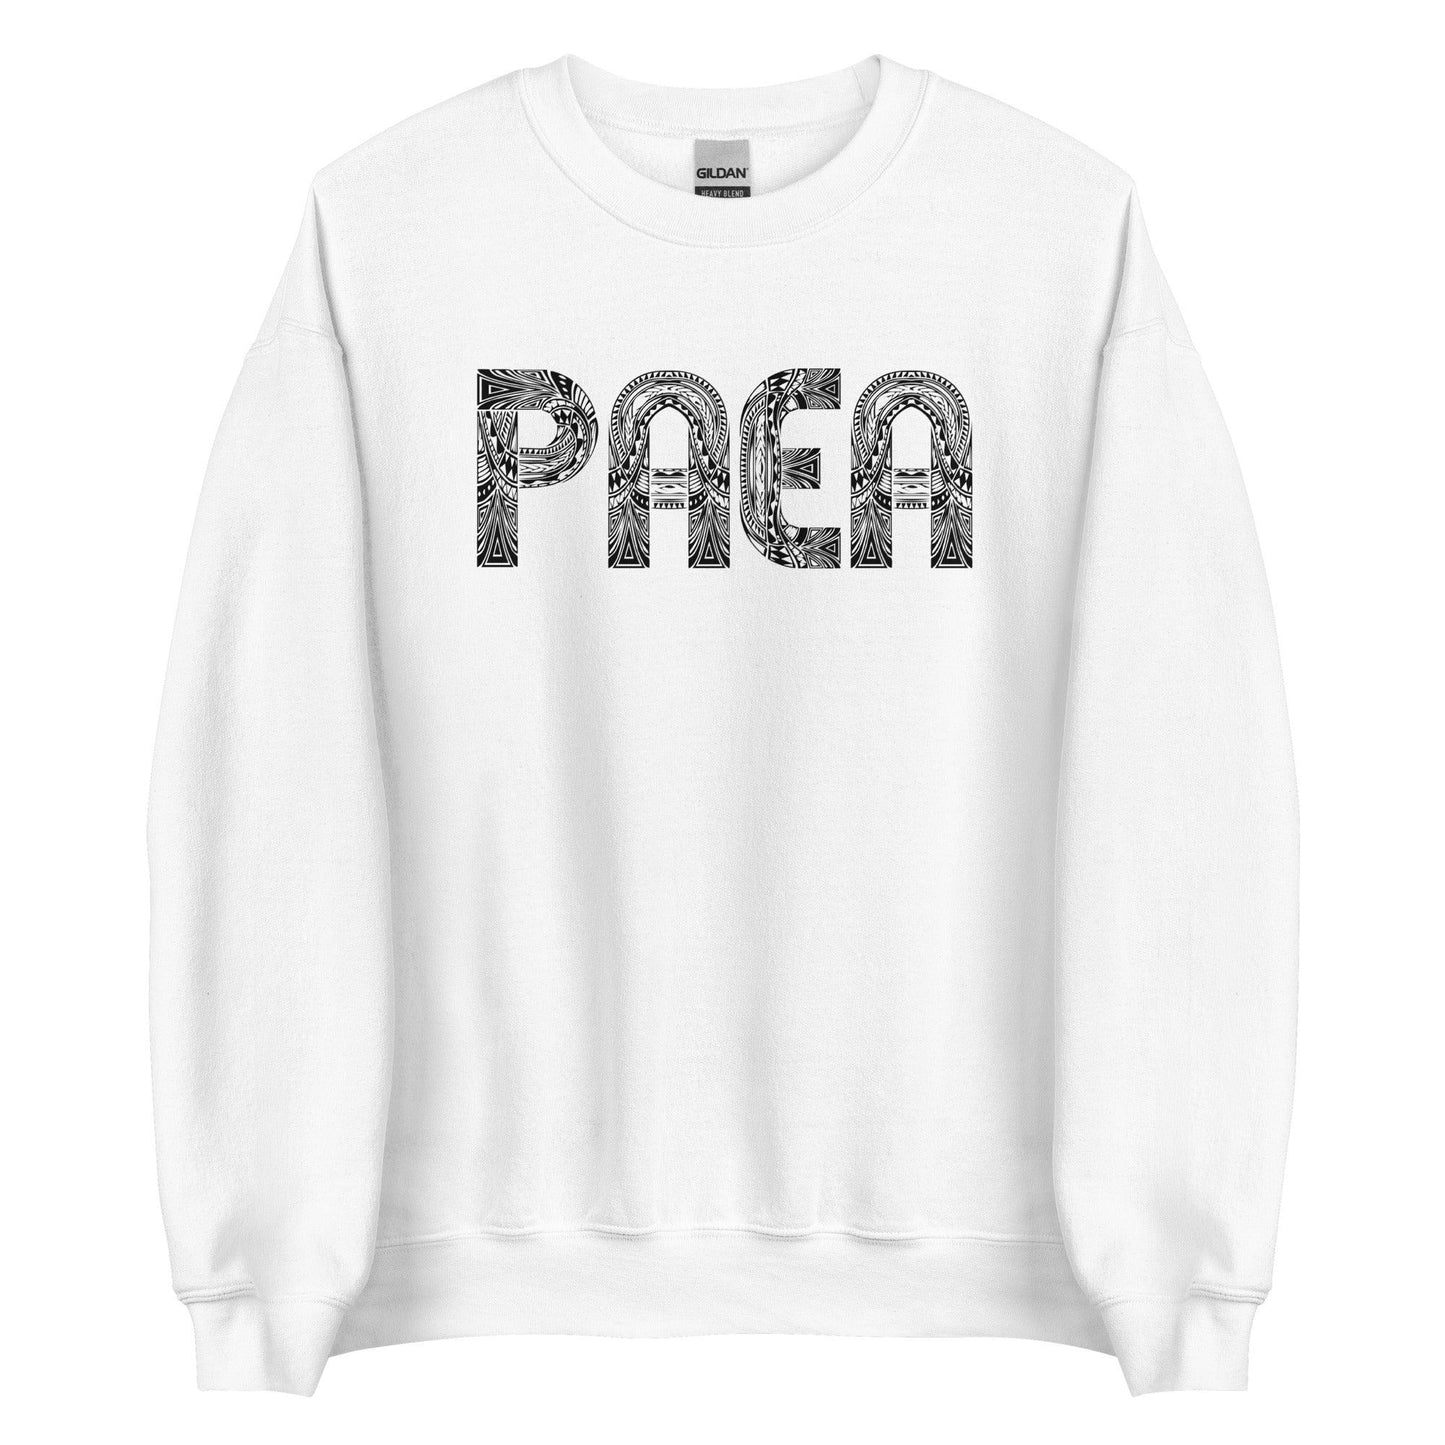 Phill Paea "Origins" Sweatshirt - Fan Arch